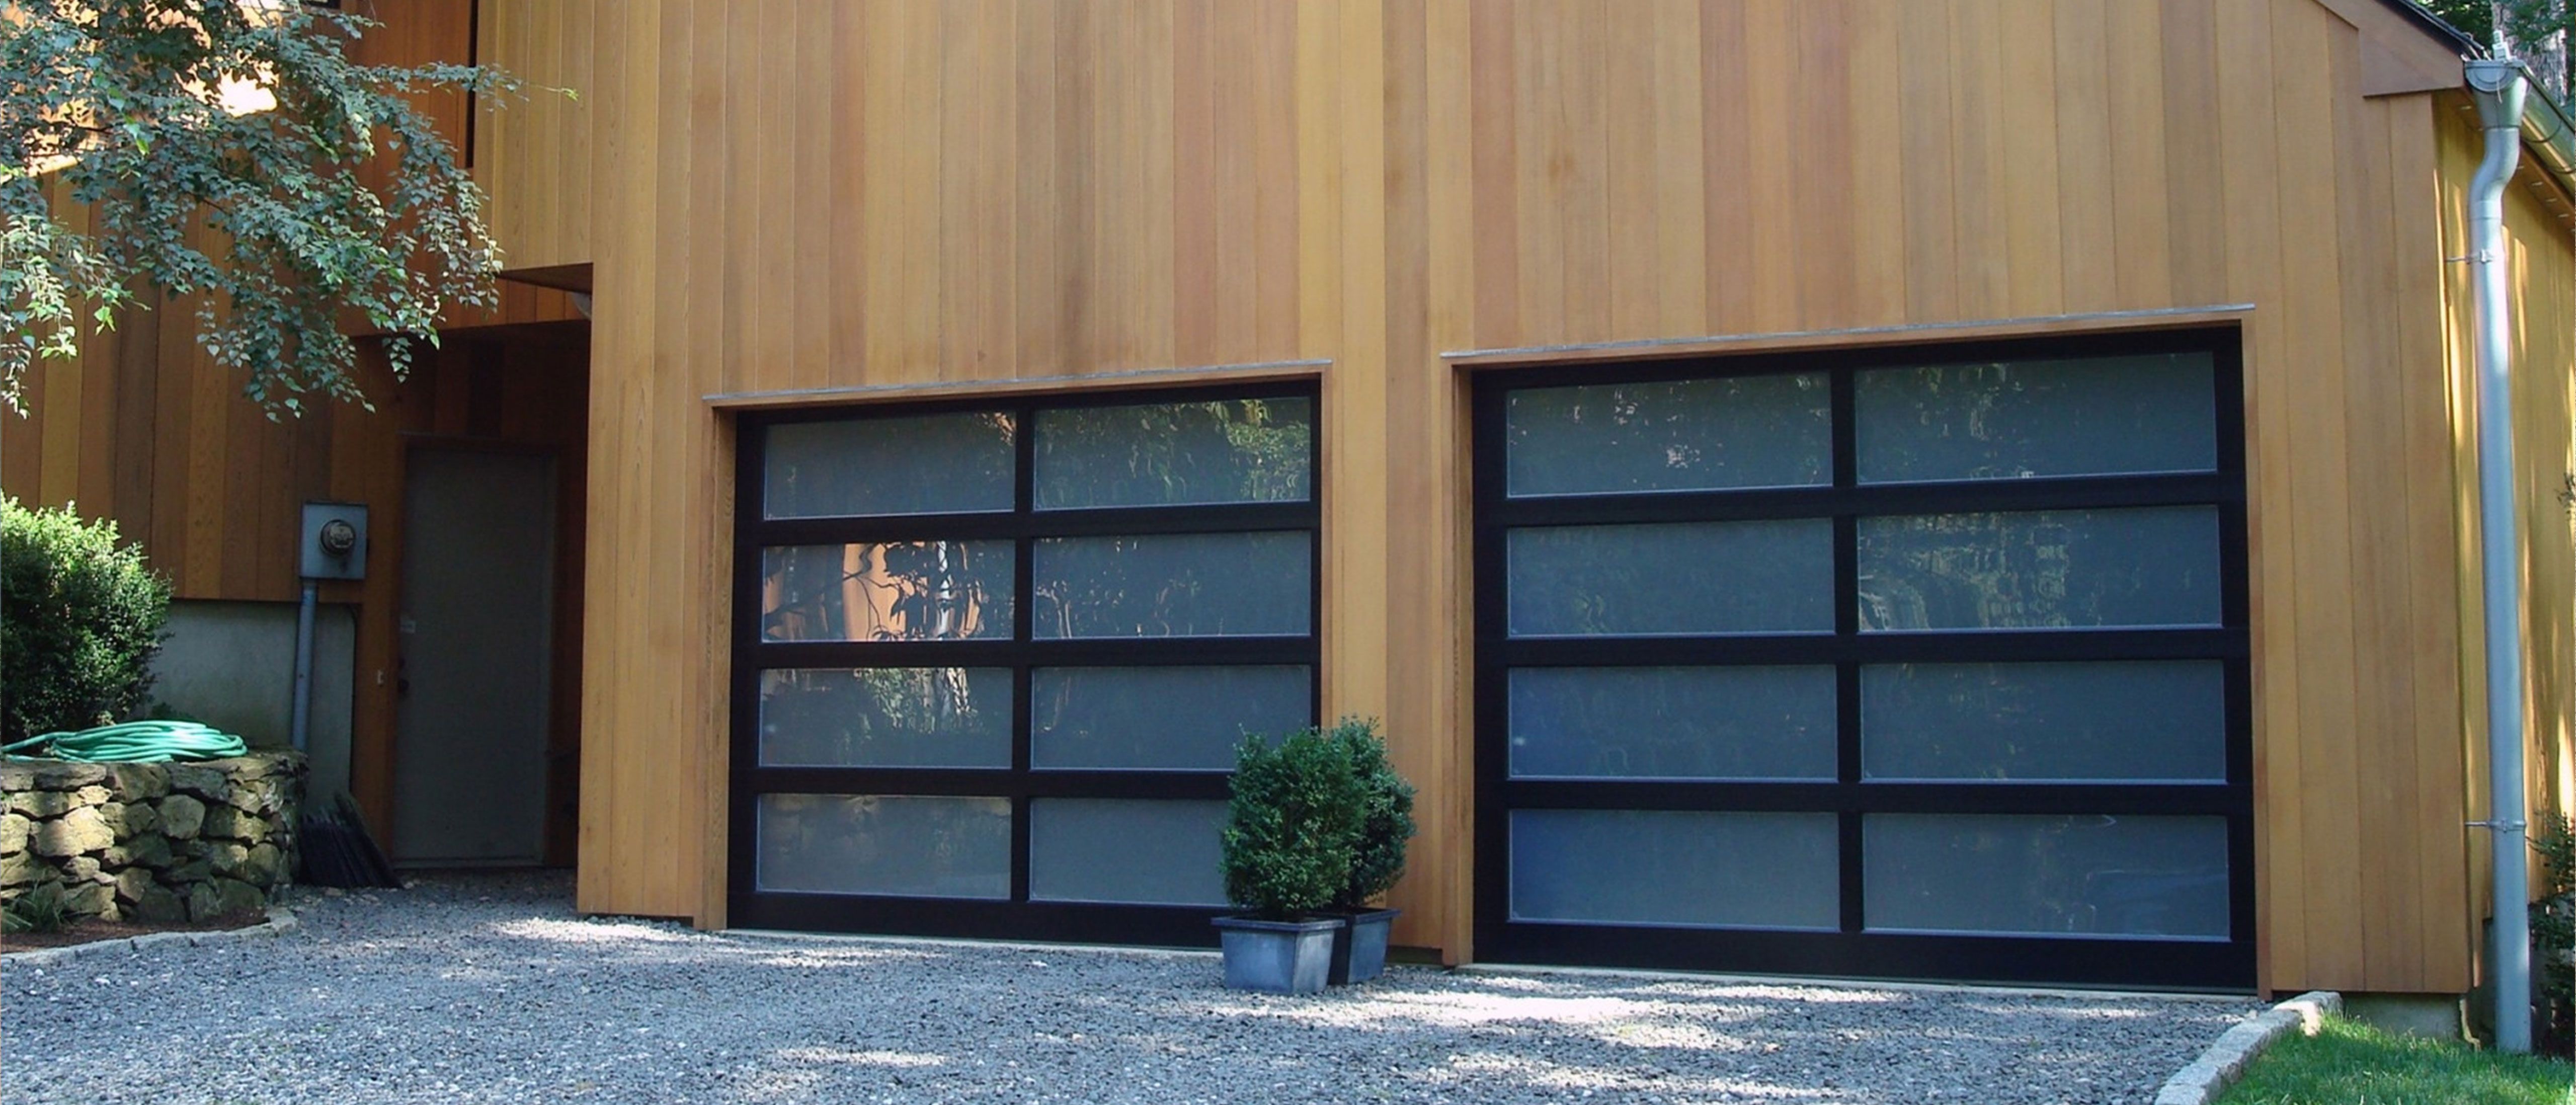 Porte Garage a Mortara Passive House Installazione Preventivo Costo Casa Villa Villetta residenziali  industriali aziendali Porte tipo serrande  